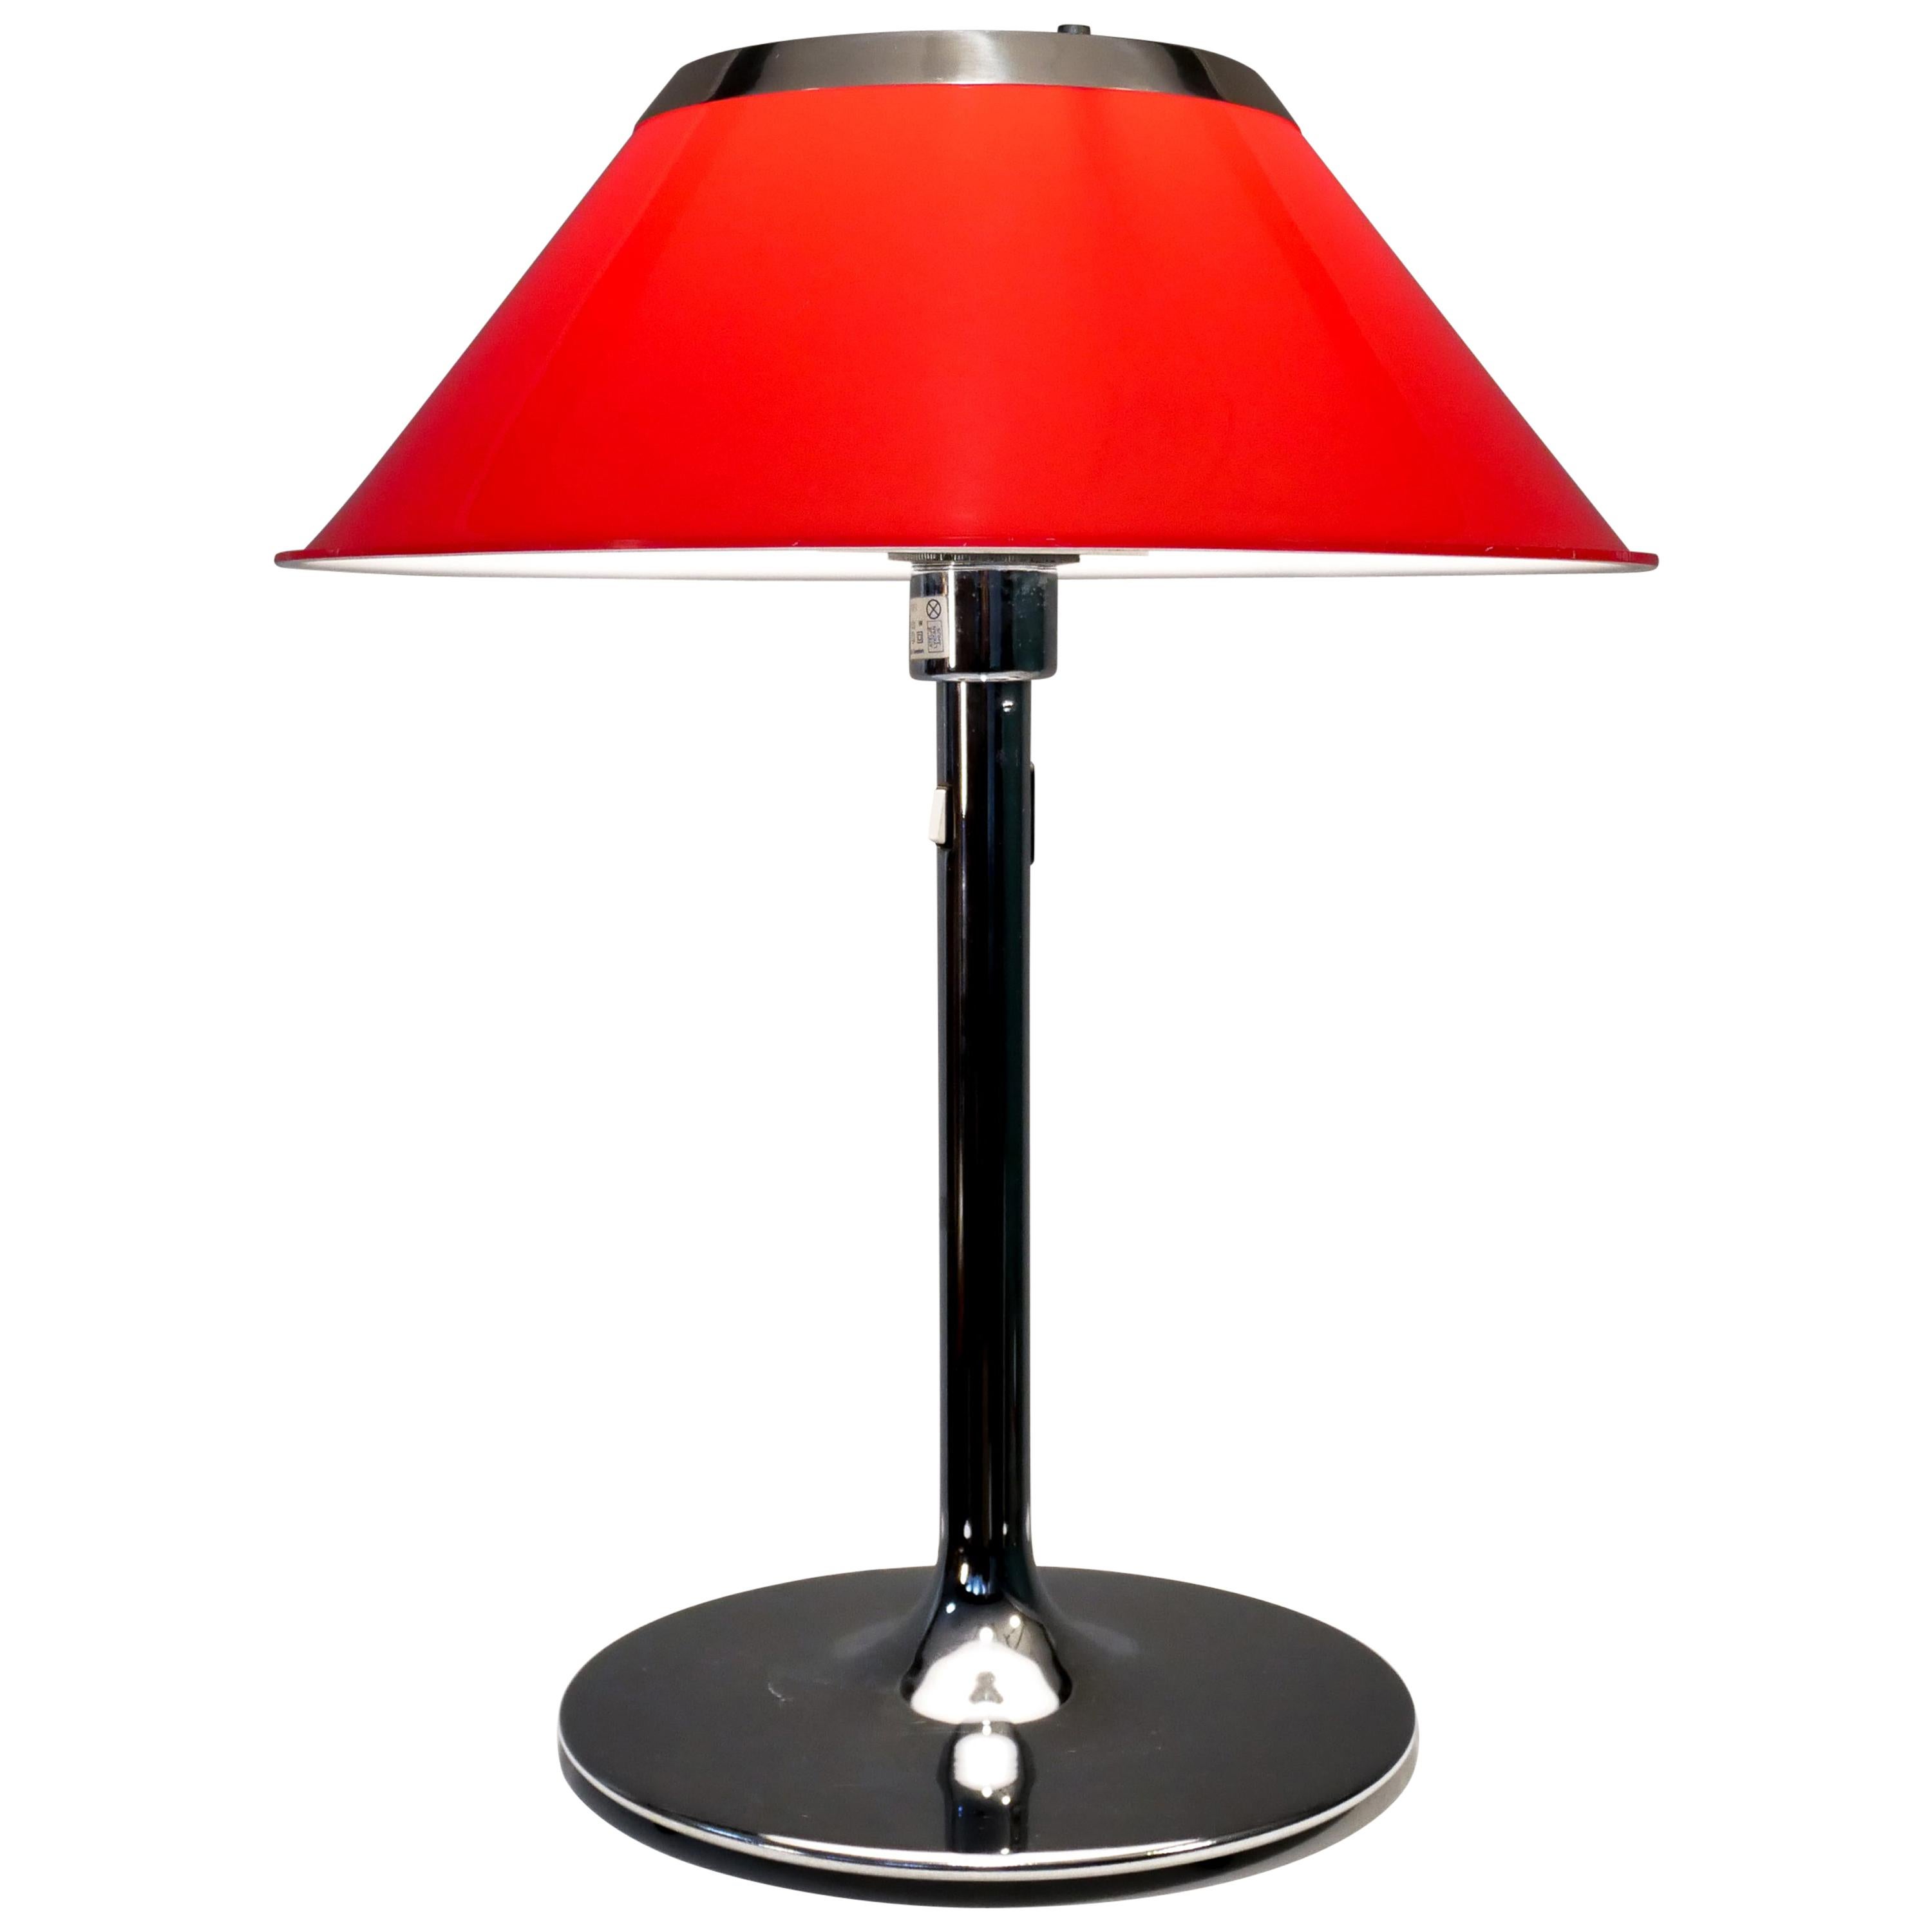 Atalje Lycktan Lamp "Mars" Designed by Per Sundstedt, 1972 For Sale